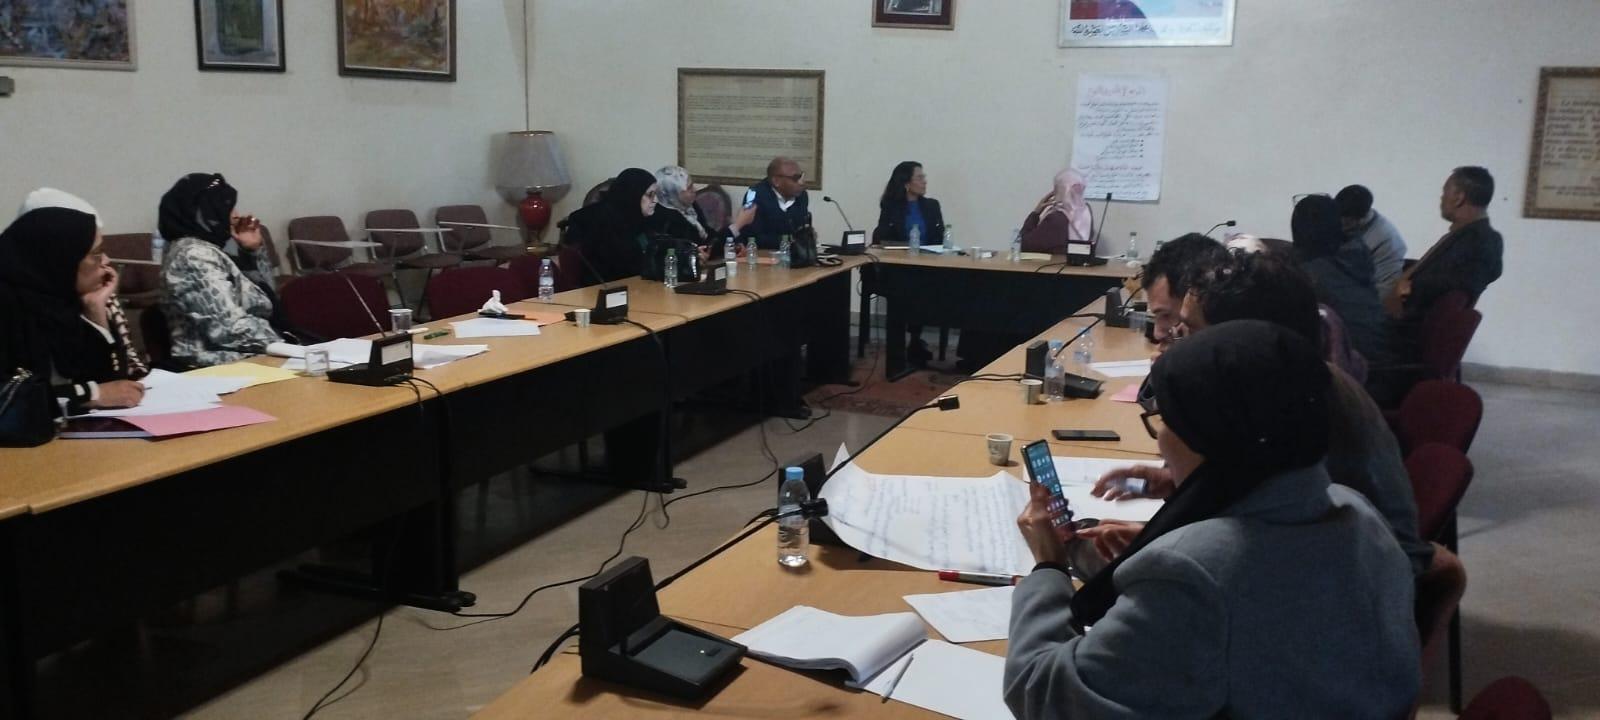 Au Maroc, organisation d'ateliers de formation autour des mesures de digitalisation de la participation citoyenne